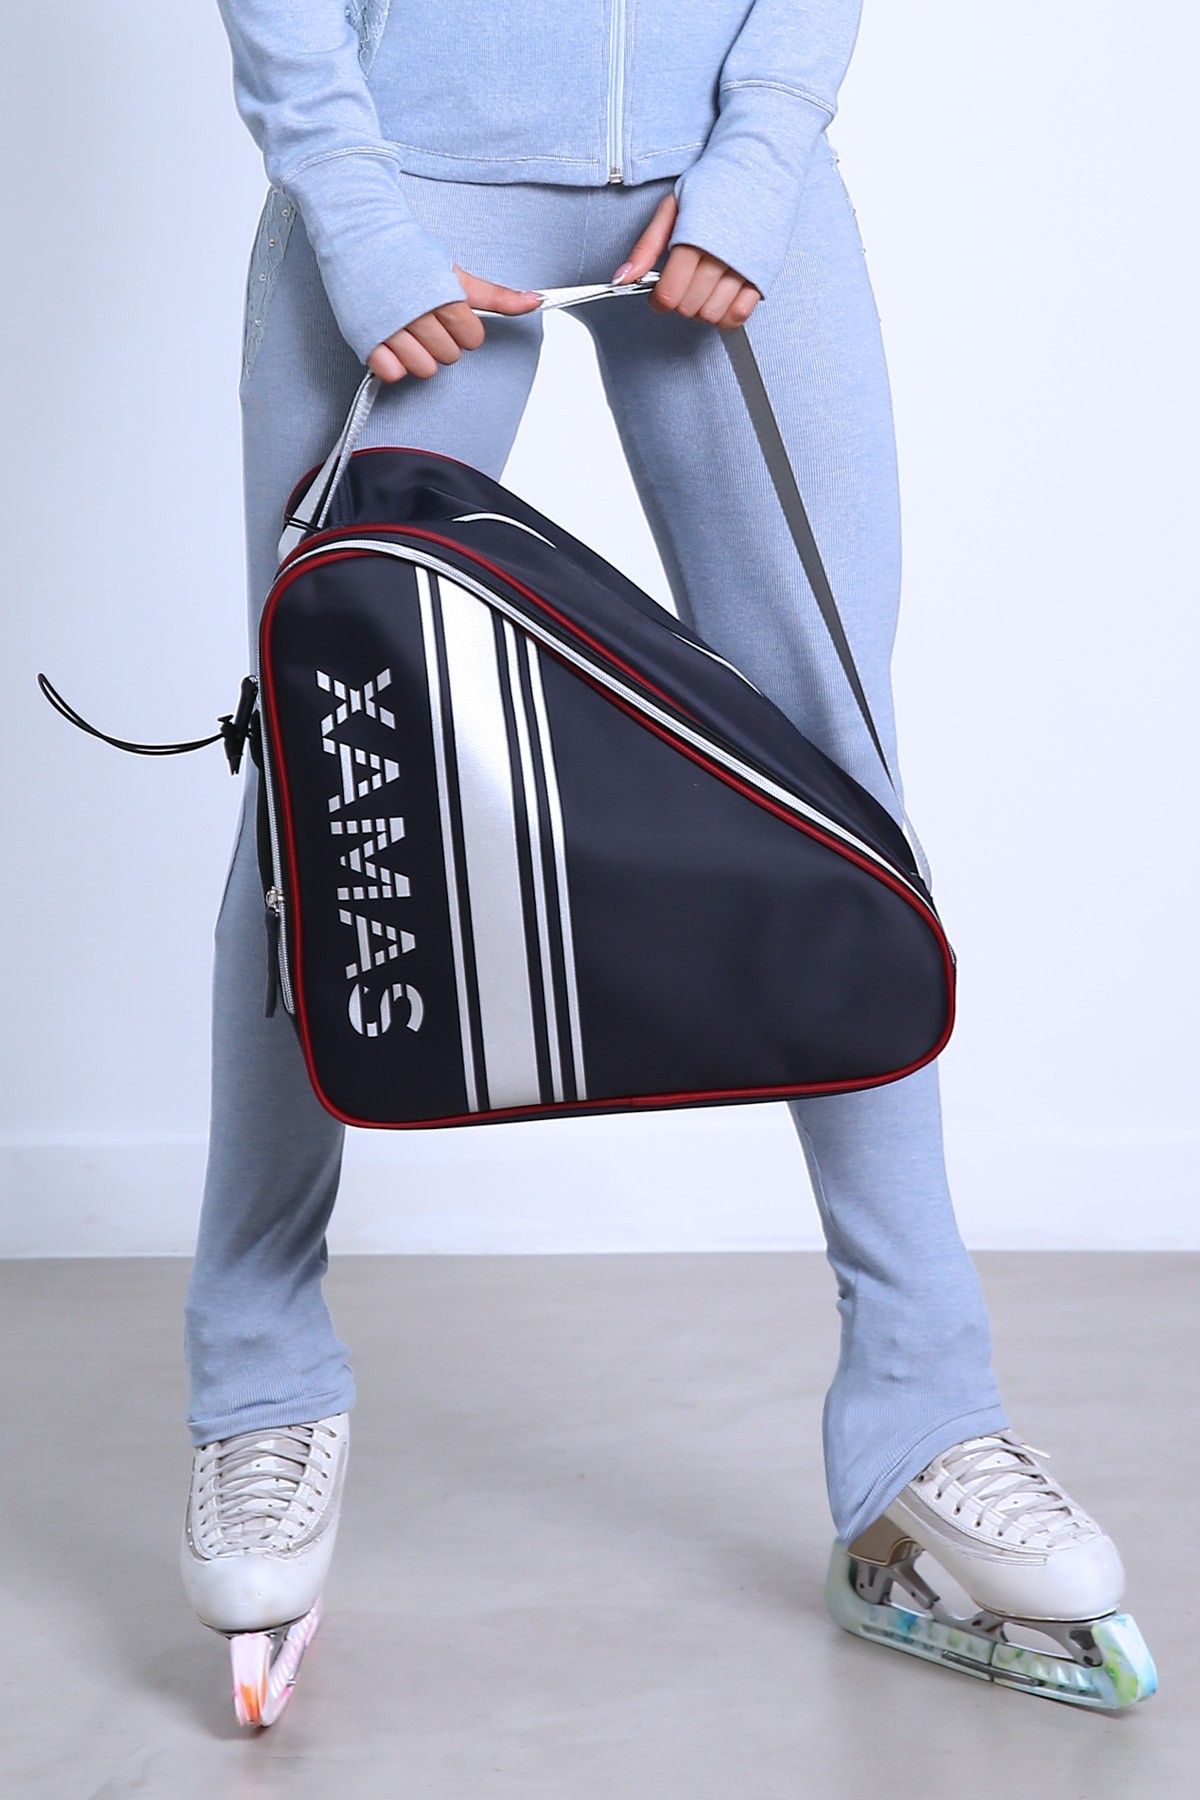 Premium Pro XAMAS De Luxe Skate Bag - Royal Blue Silver Print